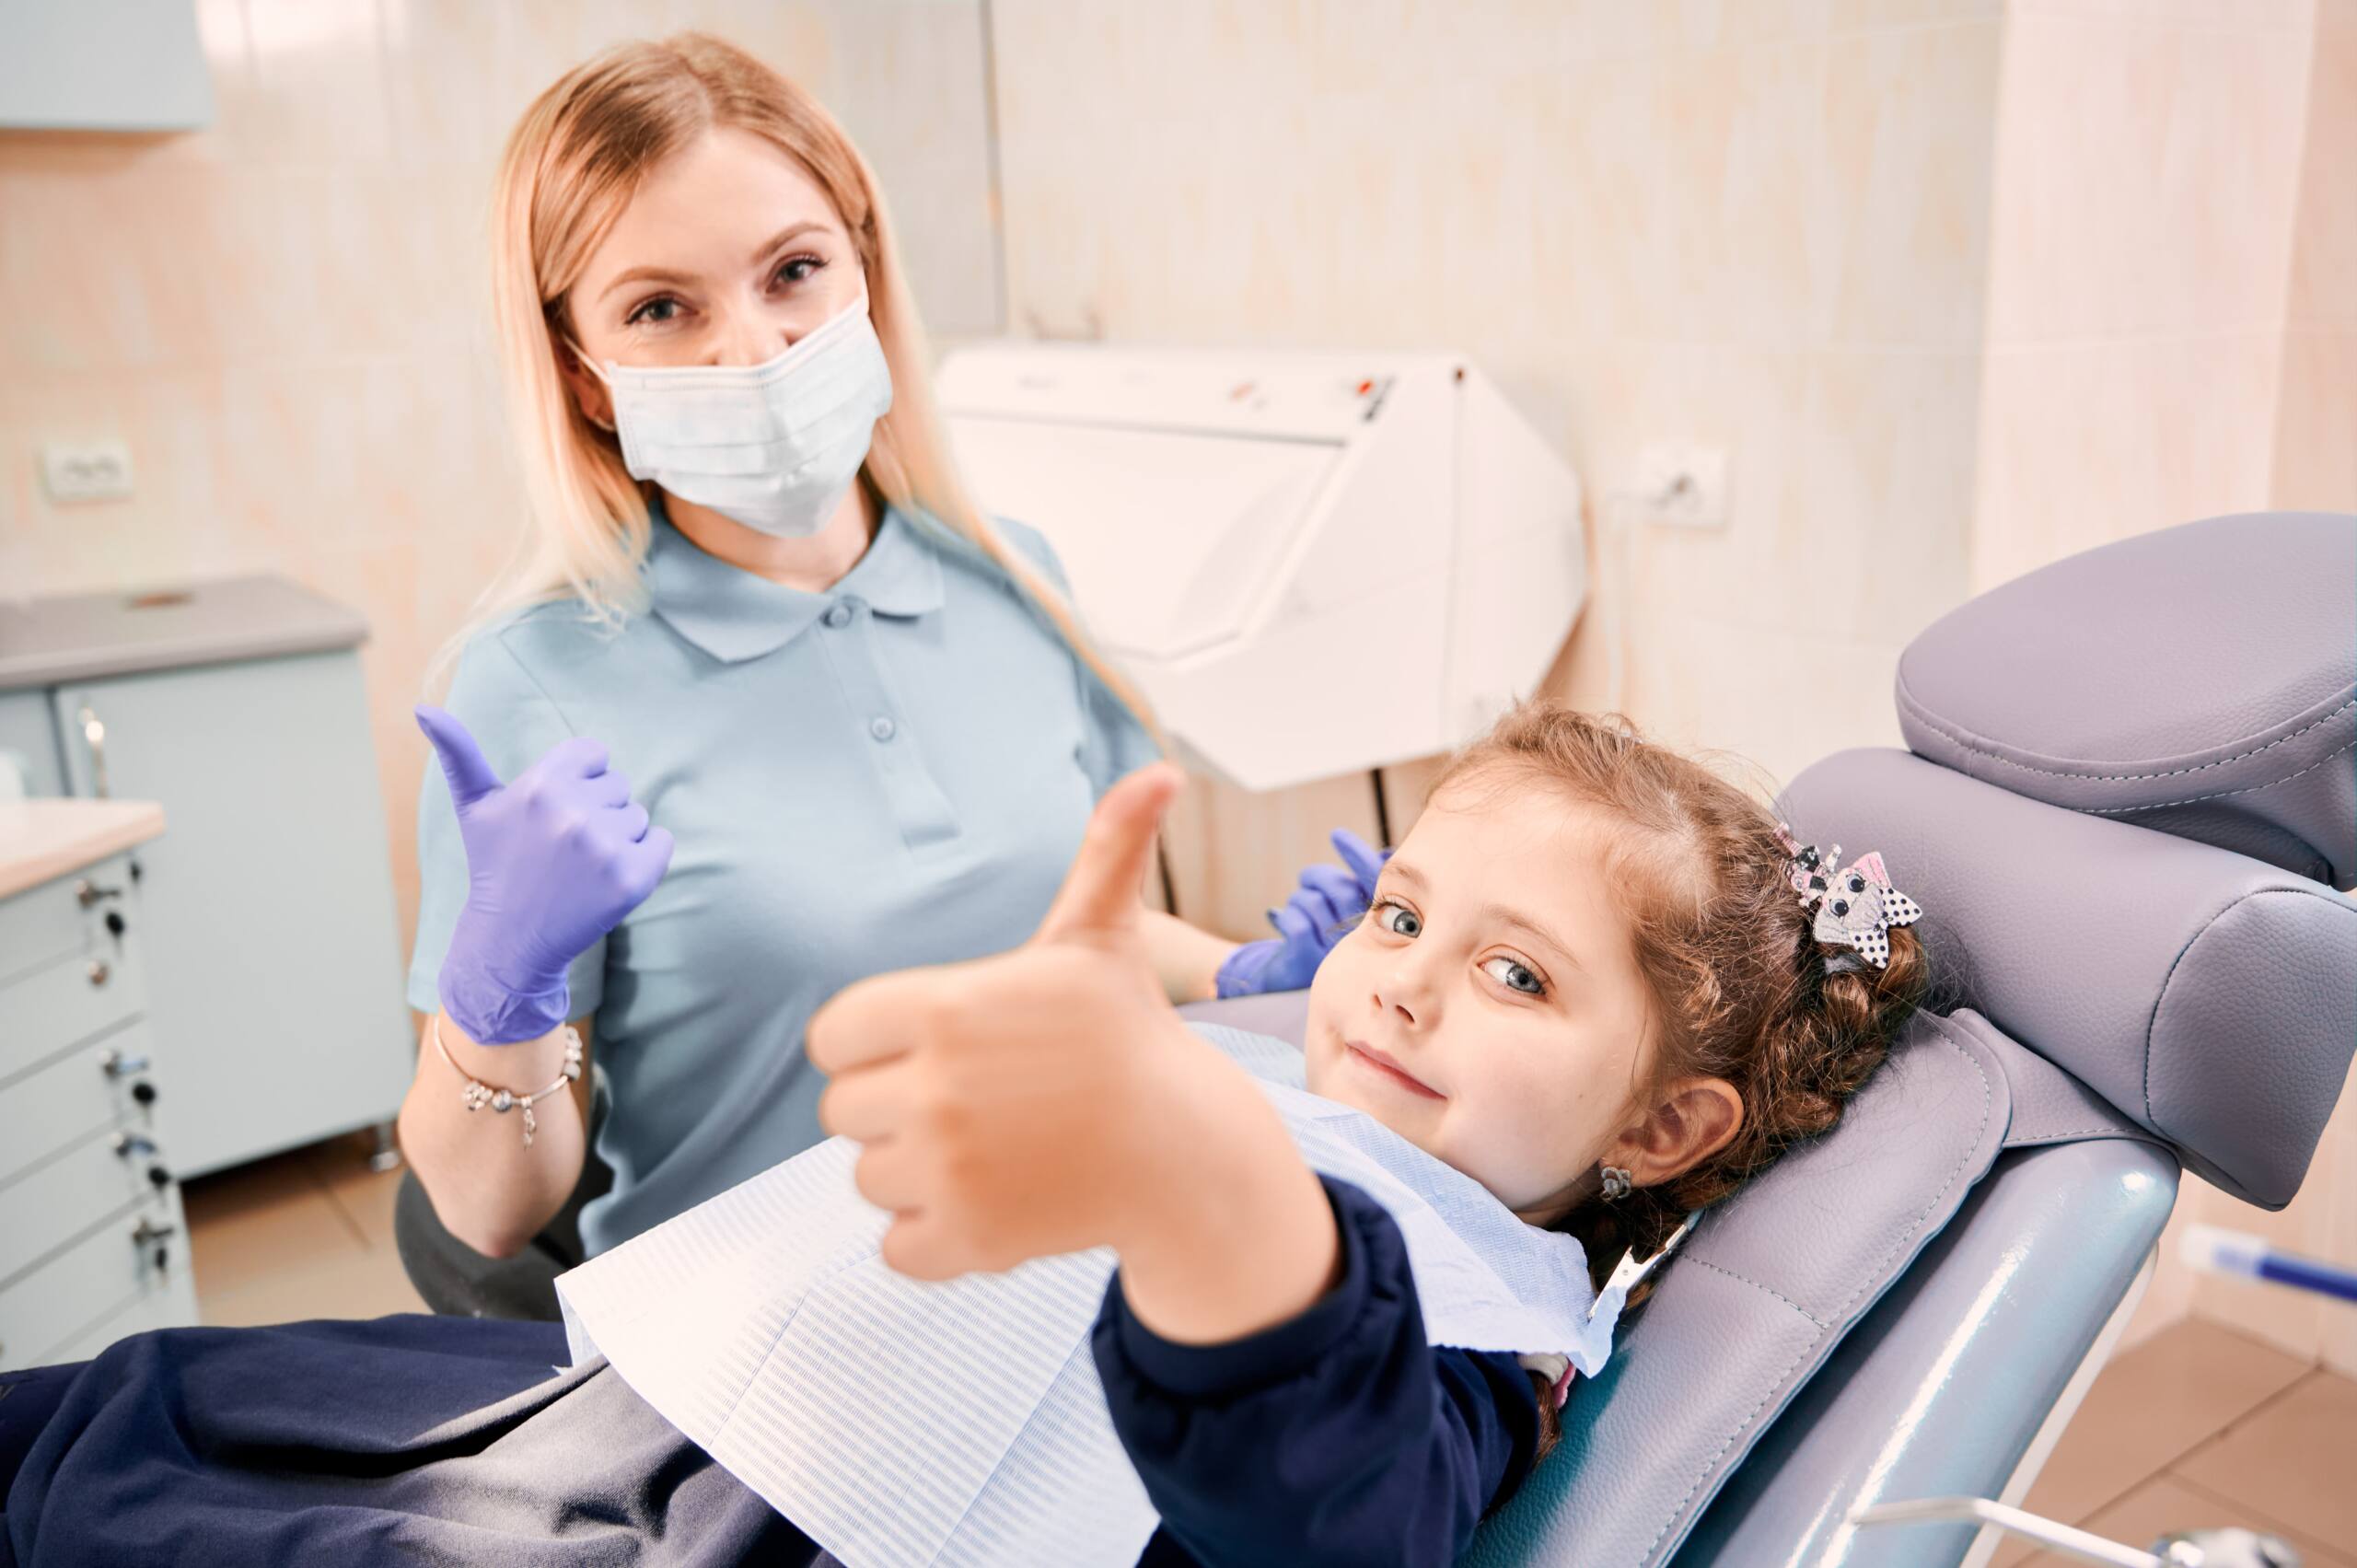 ¿Qué tipos de ortodoncia son adecuados para niños